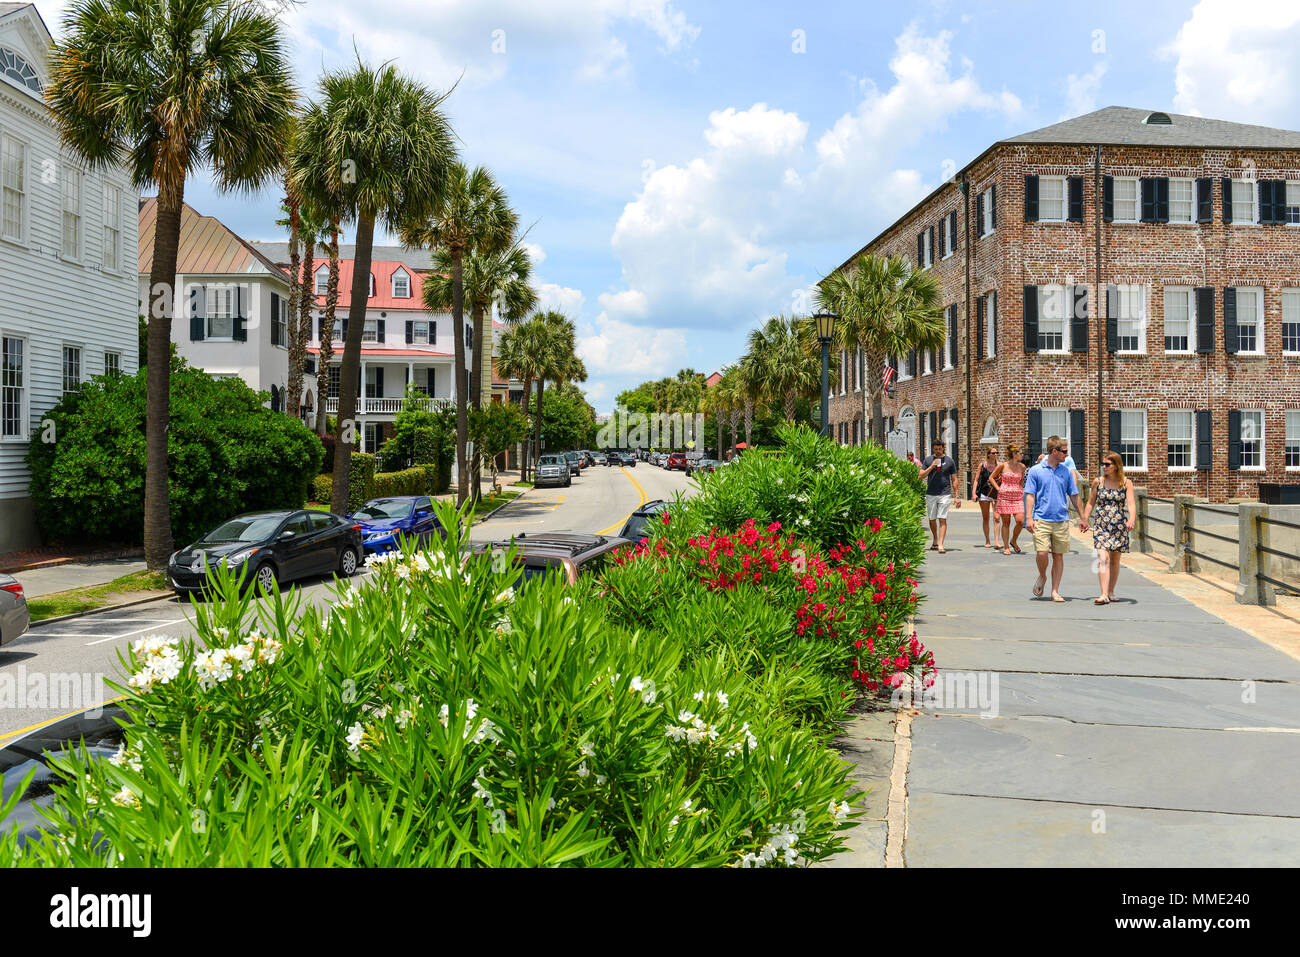 Charleston SC - l'historique et pittoresque East Bay Street, sur riverfront de Cooper River, est l'une des attractions touristiques les plus populaires au centre-ville de la ville. Banque D'Images